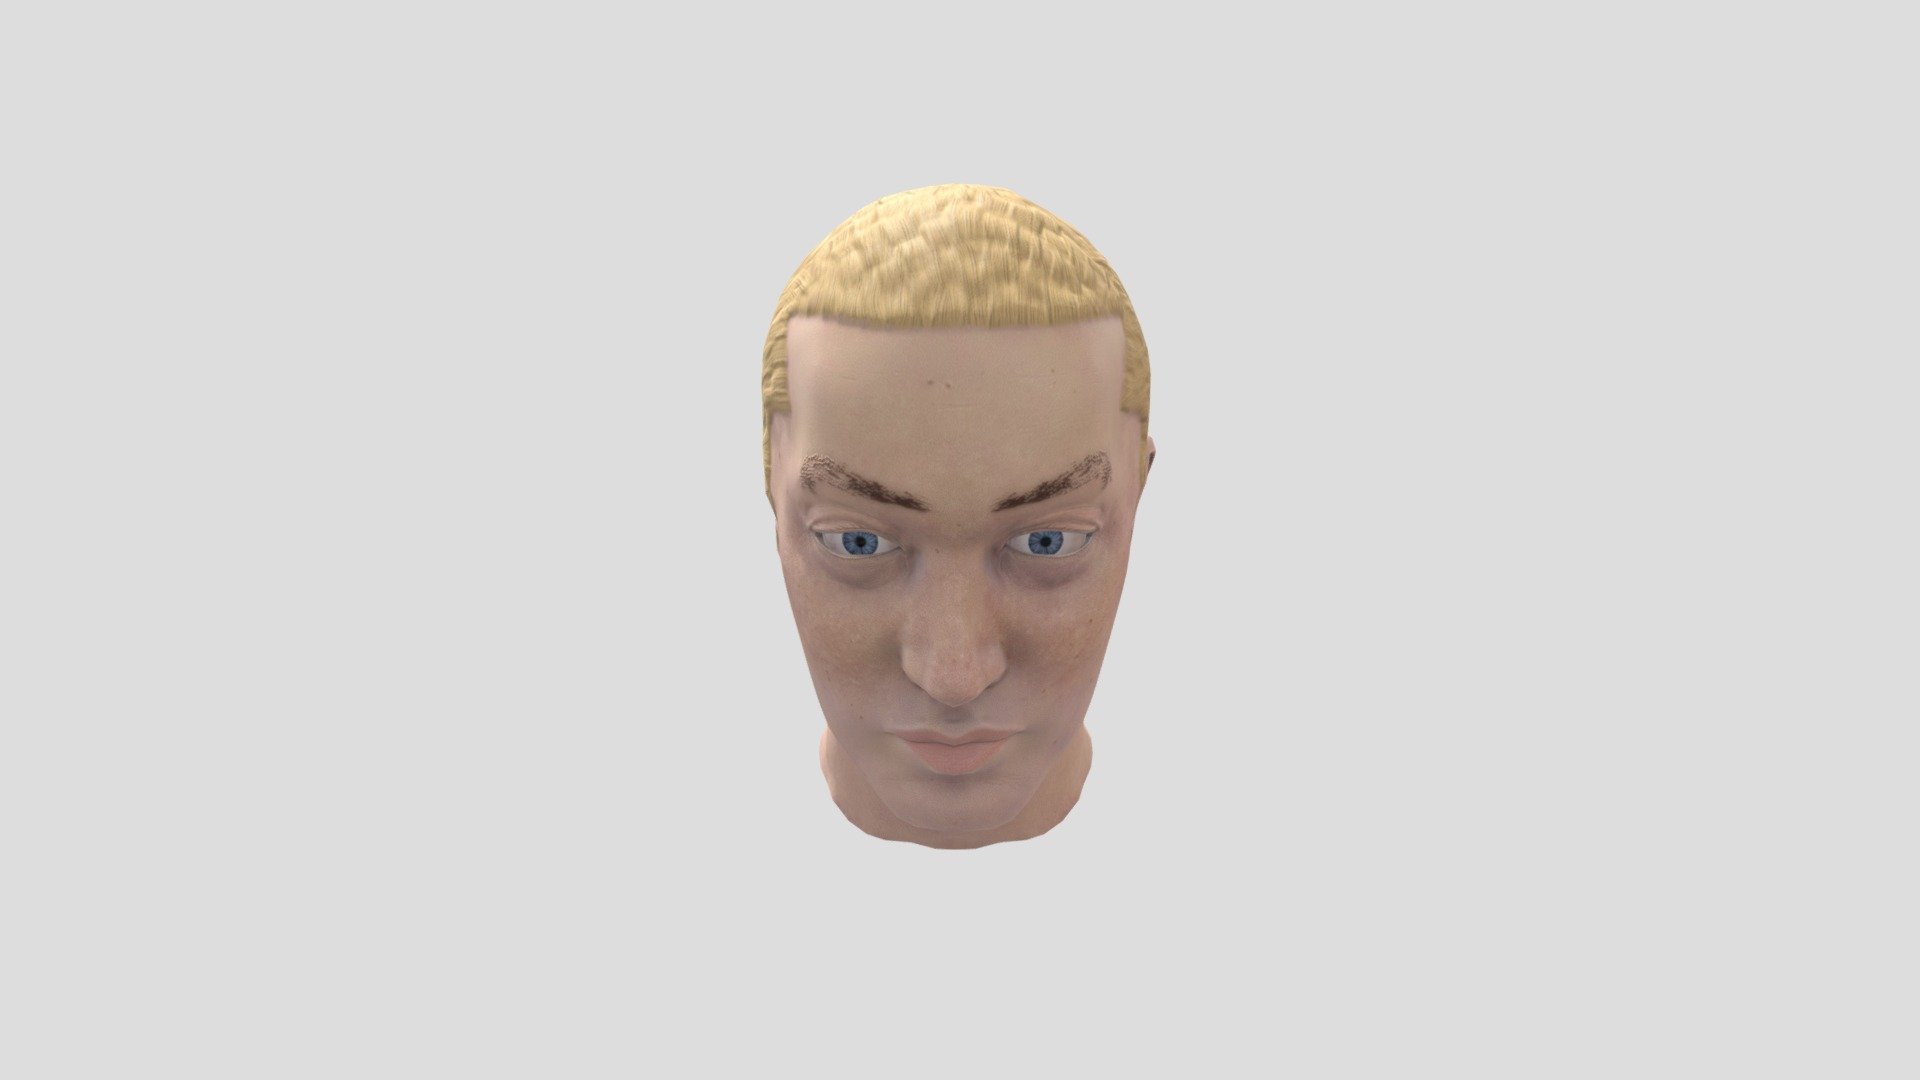 Eminem Bust - 3D model by KyleDowdy [88503f0] - Sketchfab